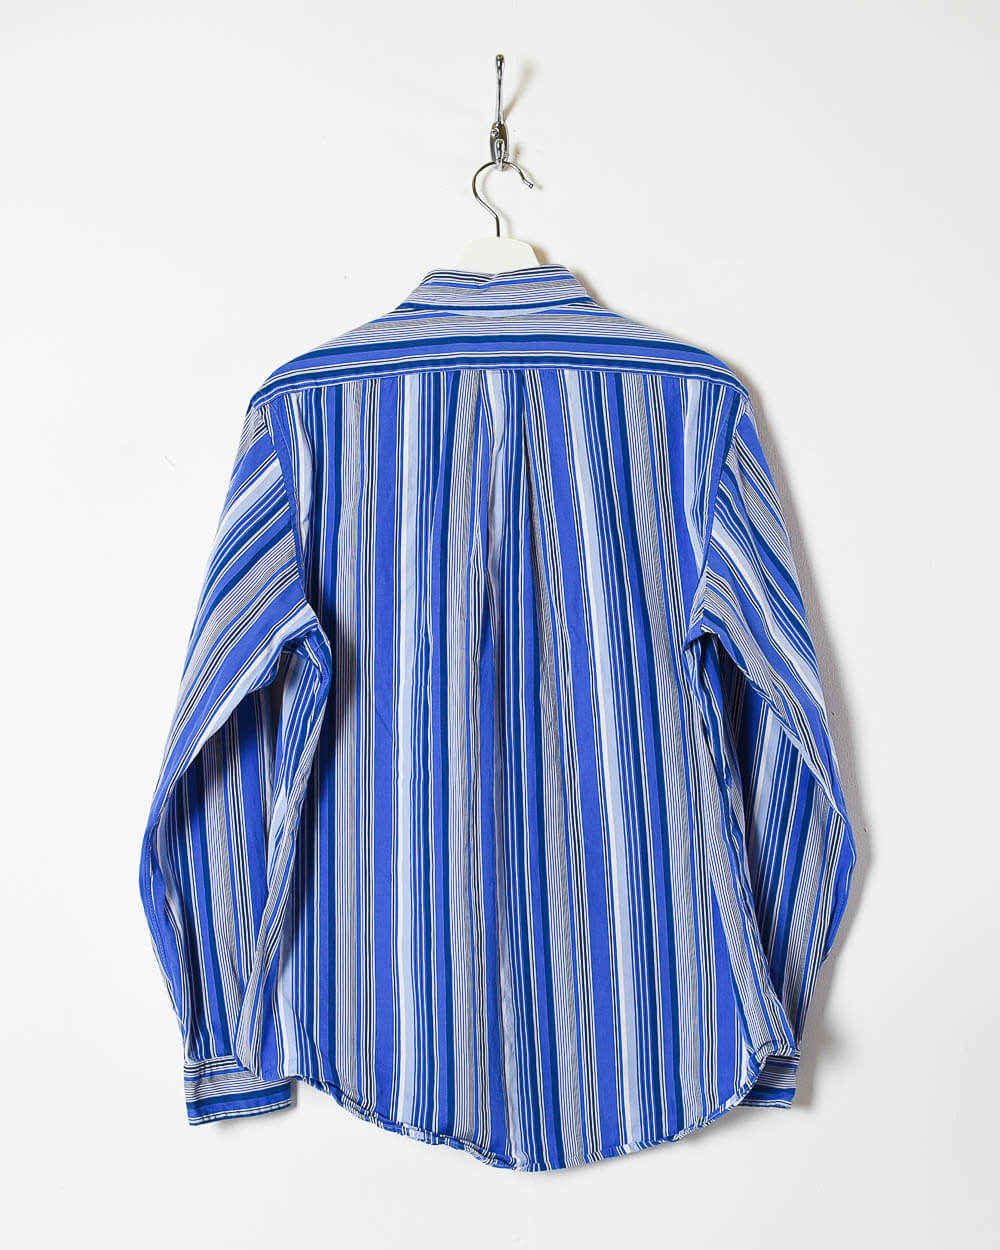 Blue Ralph Lauren Shirt - Medium